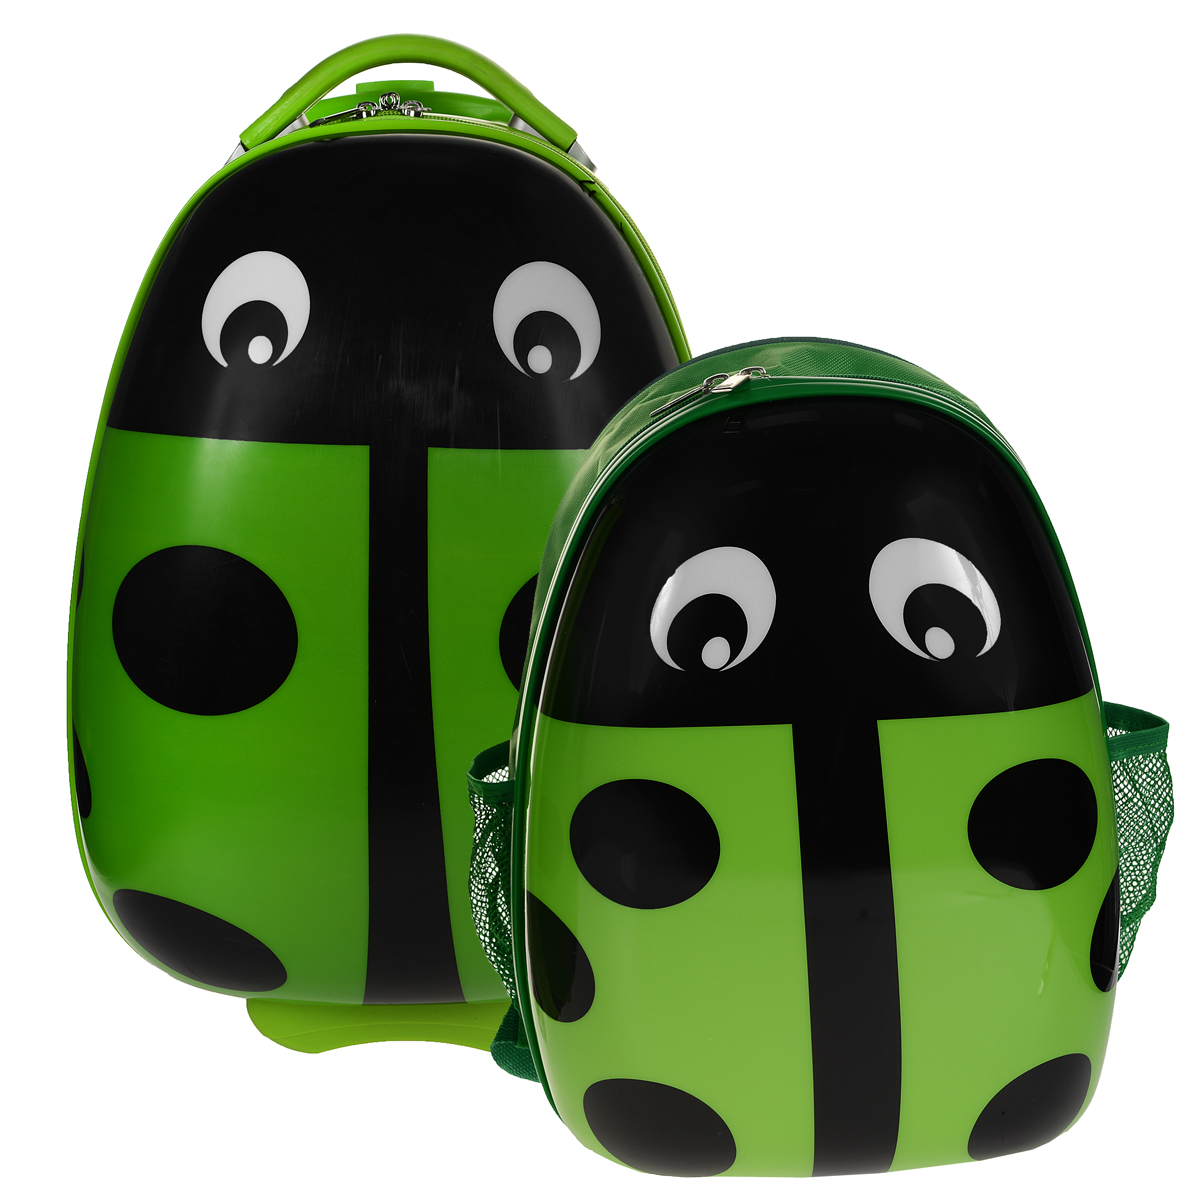 Комплект "Божья коровка": чемодан на колесиках с телескопической ручкой + детский рюкзак, цвет: зеленый - купить по доступной цене с доставкой на дом в интернет магазине OZON.ru